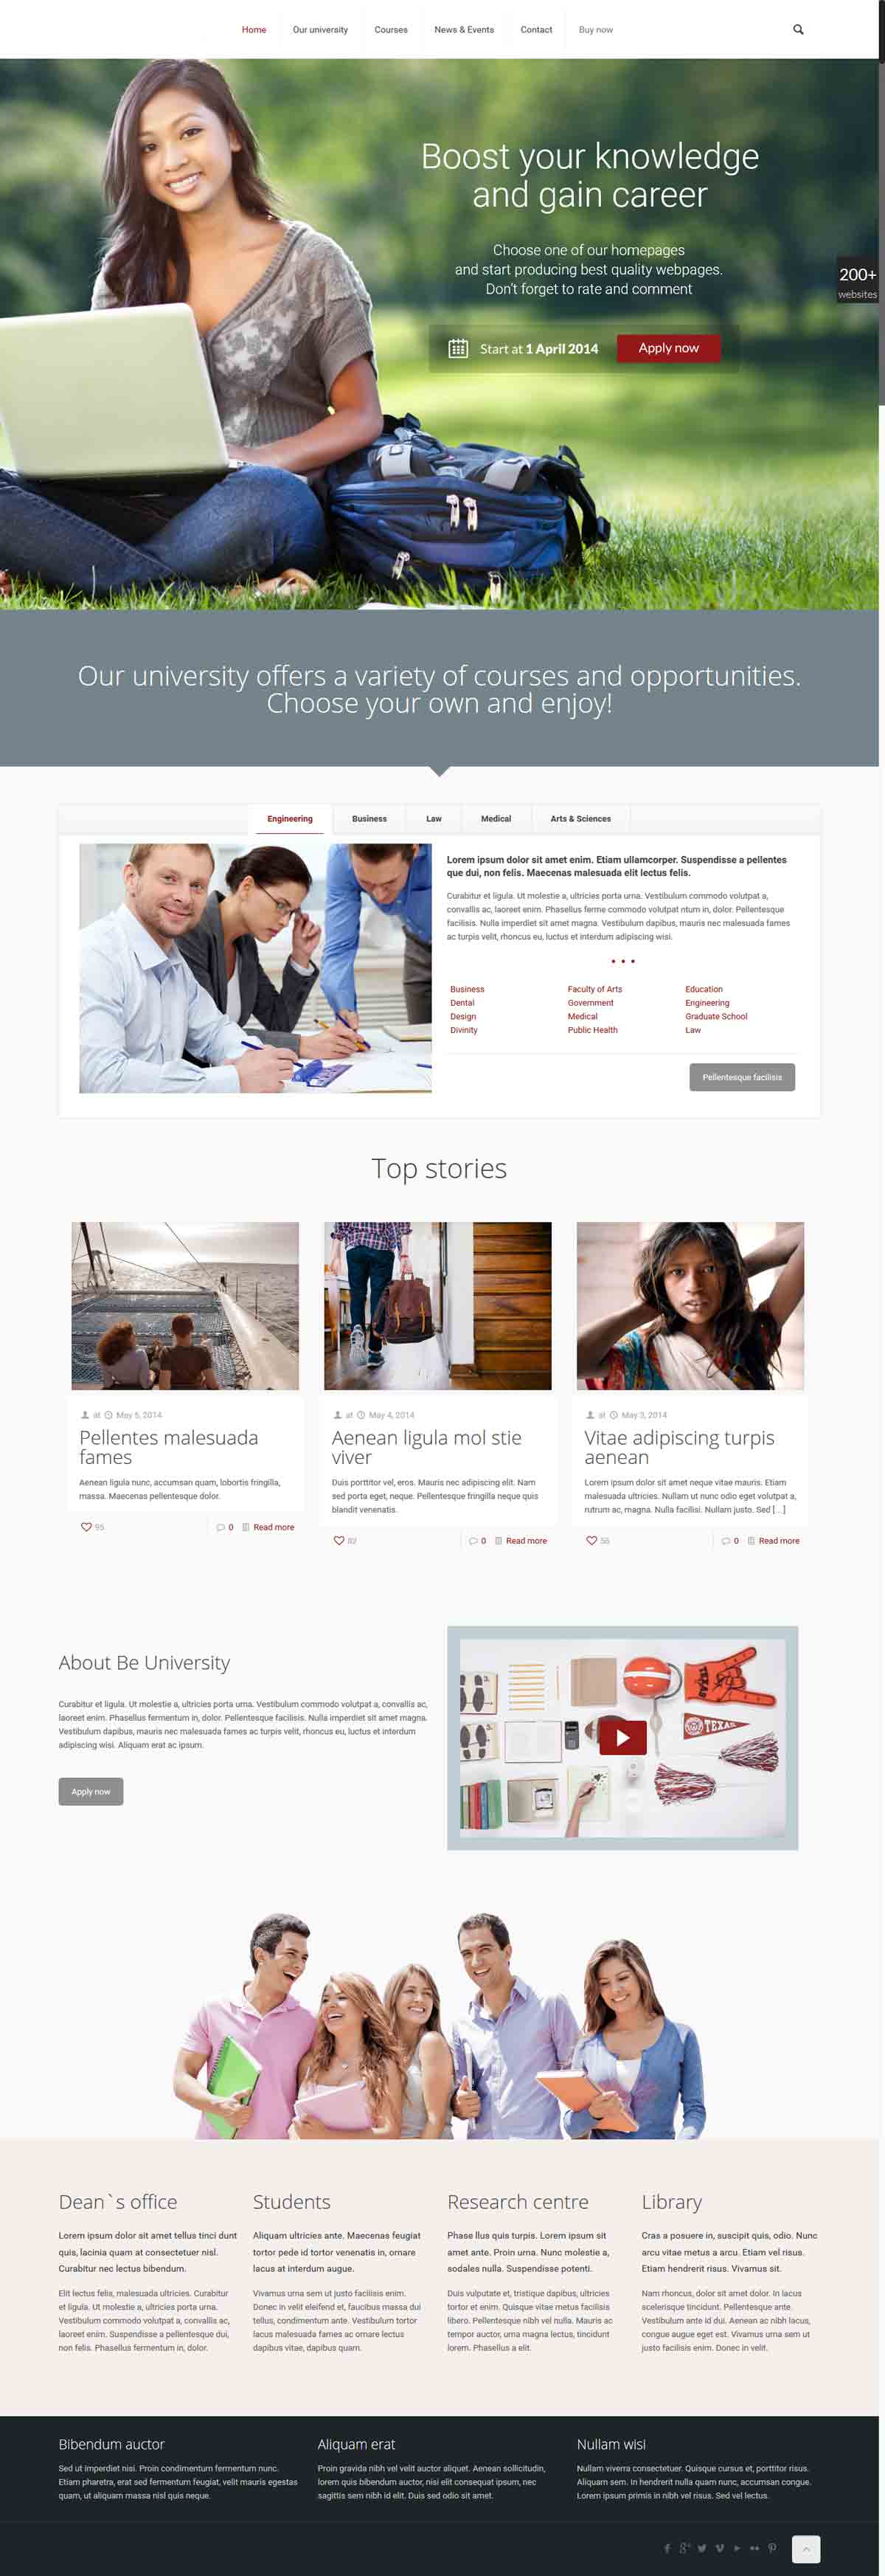 طراحی وب سایت دانشگاهی ارزان